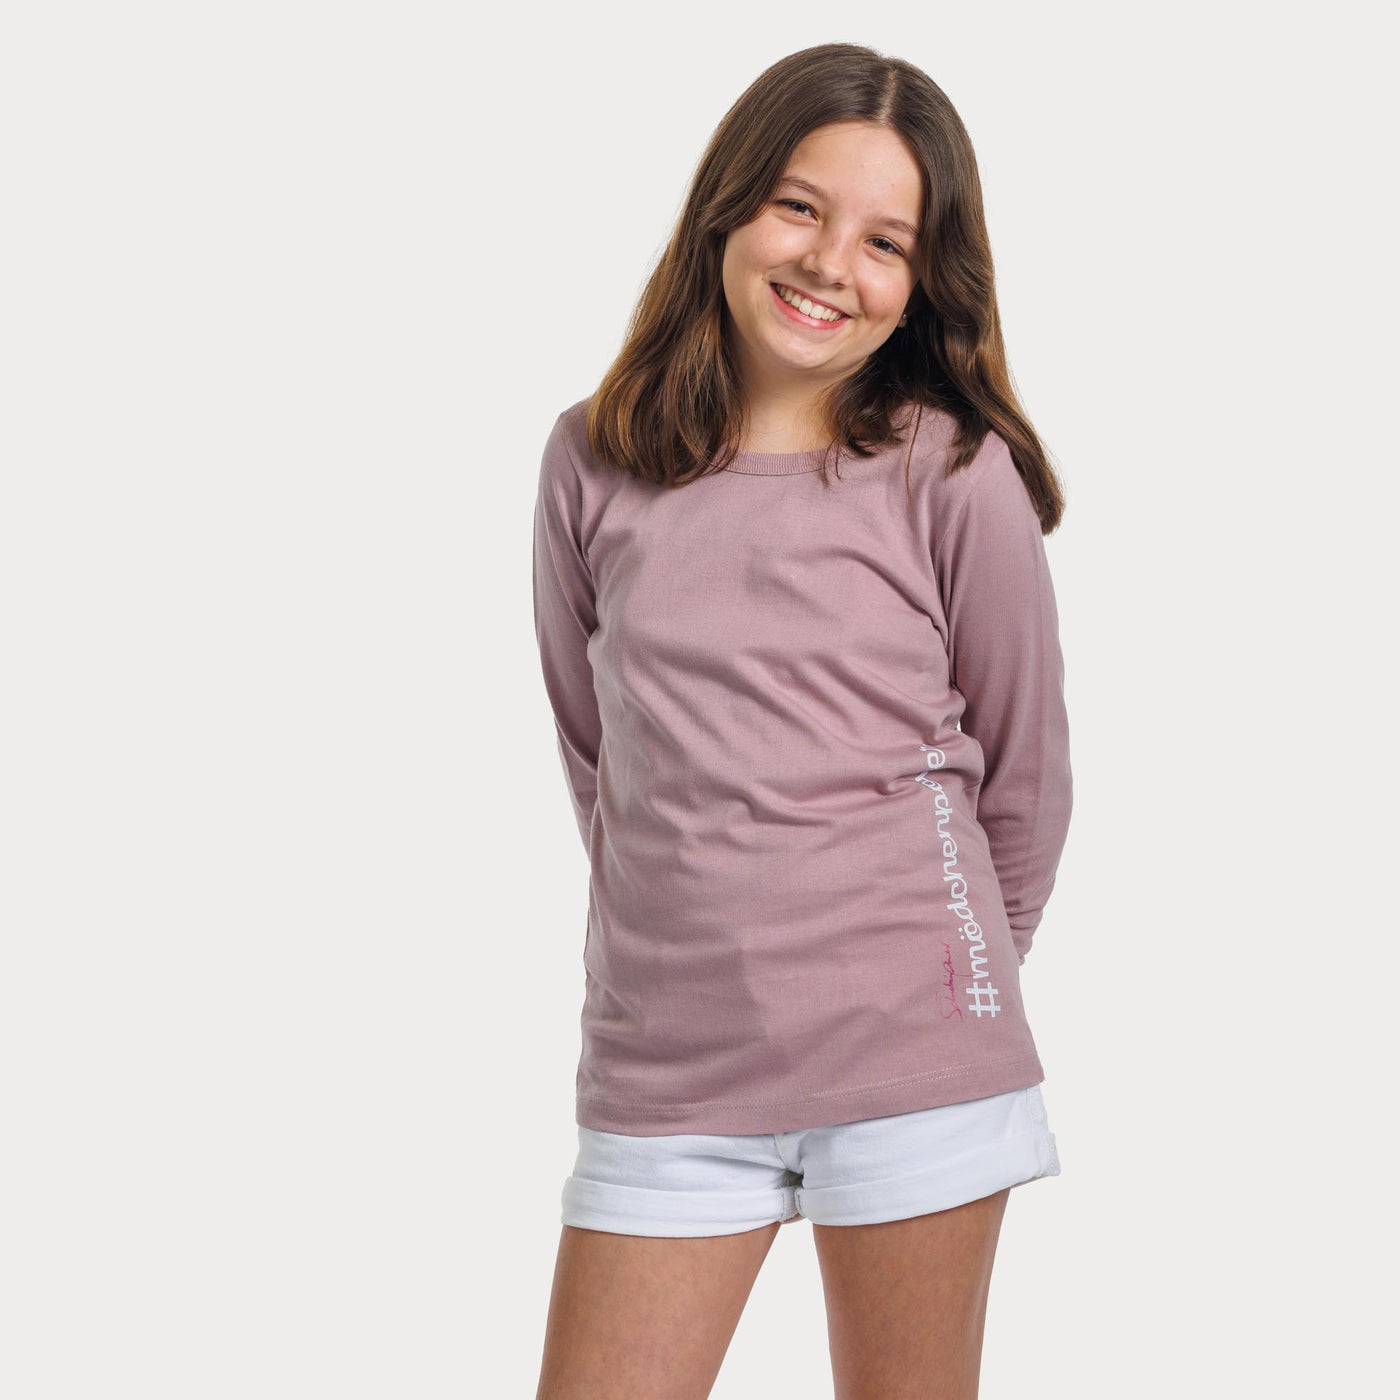 Kinder Langarm-Shirt "Mädchenpower"